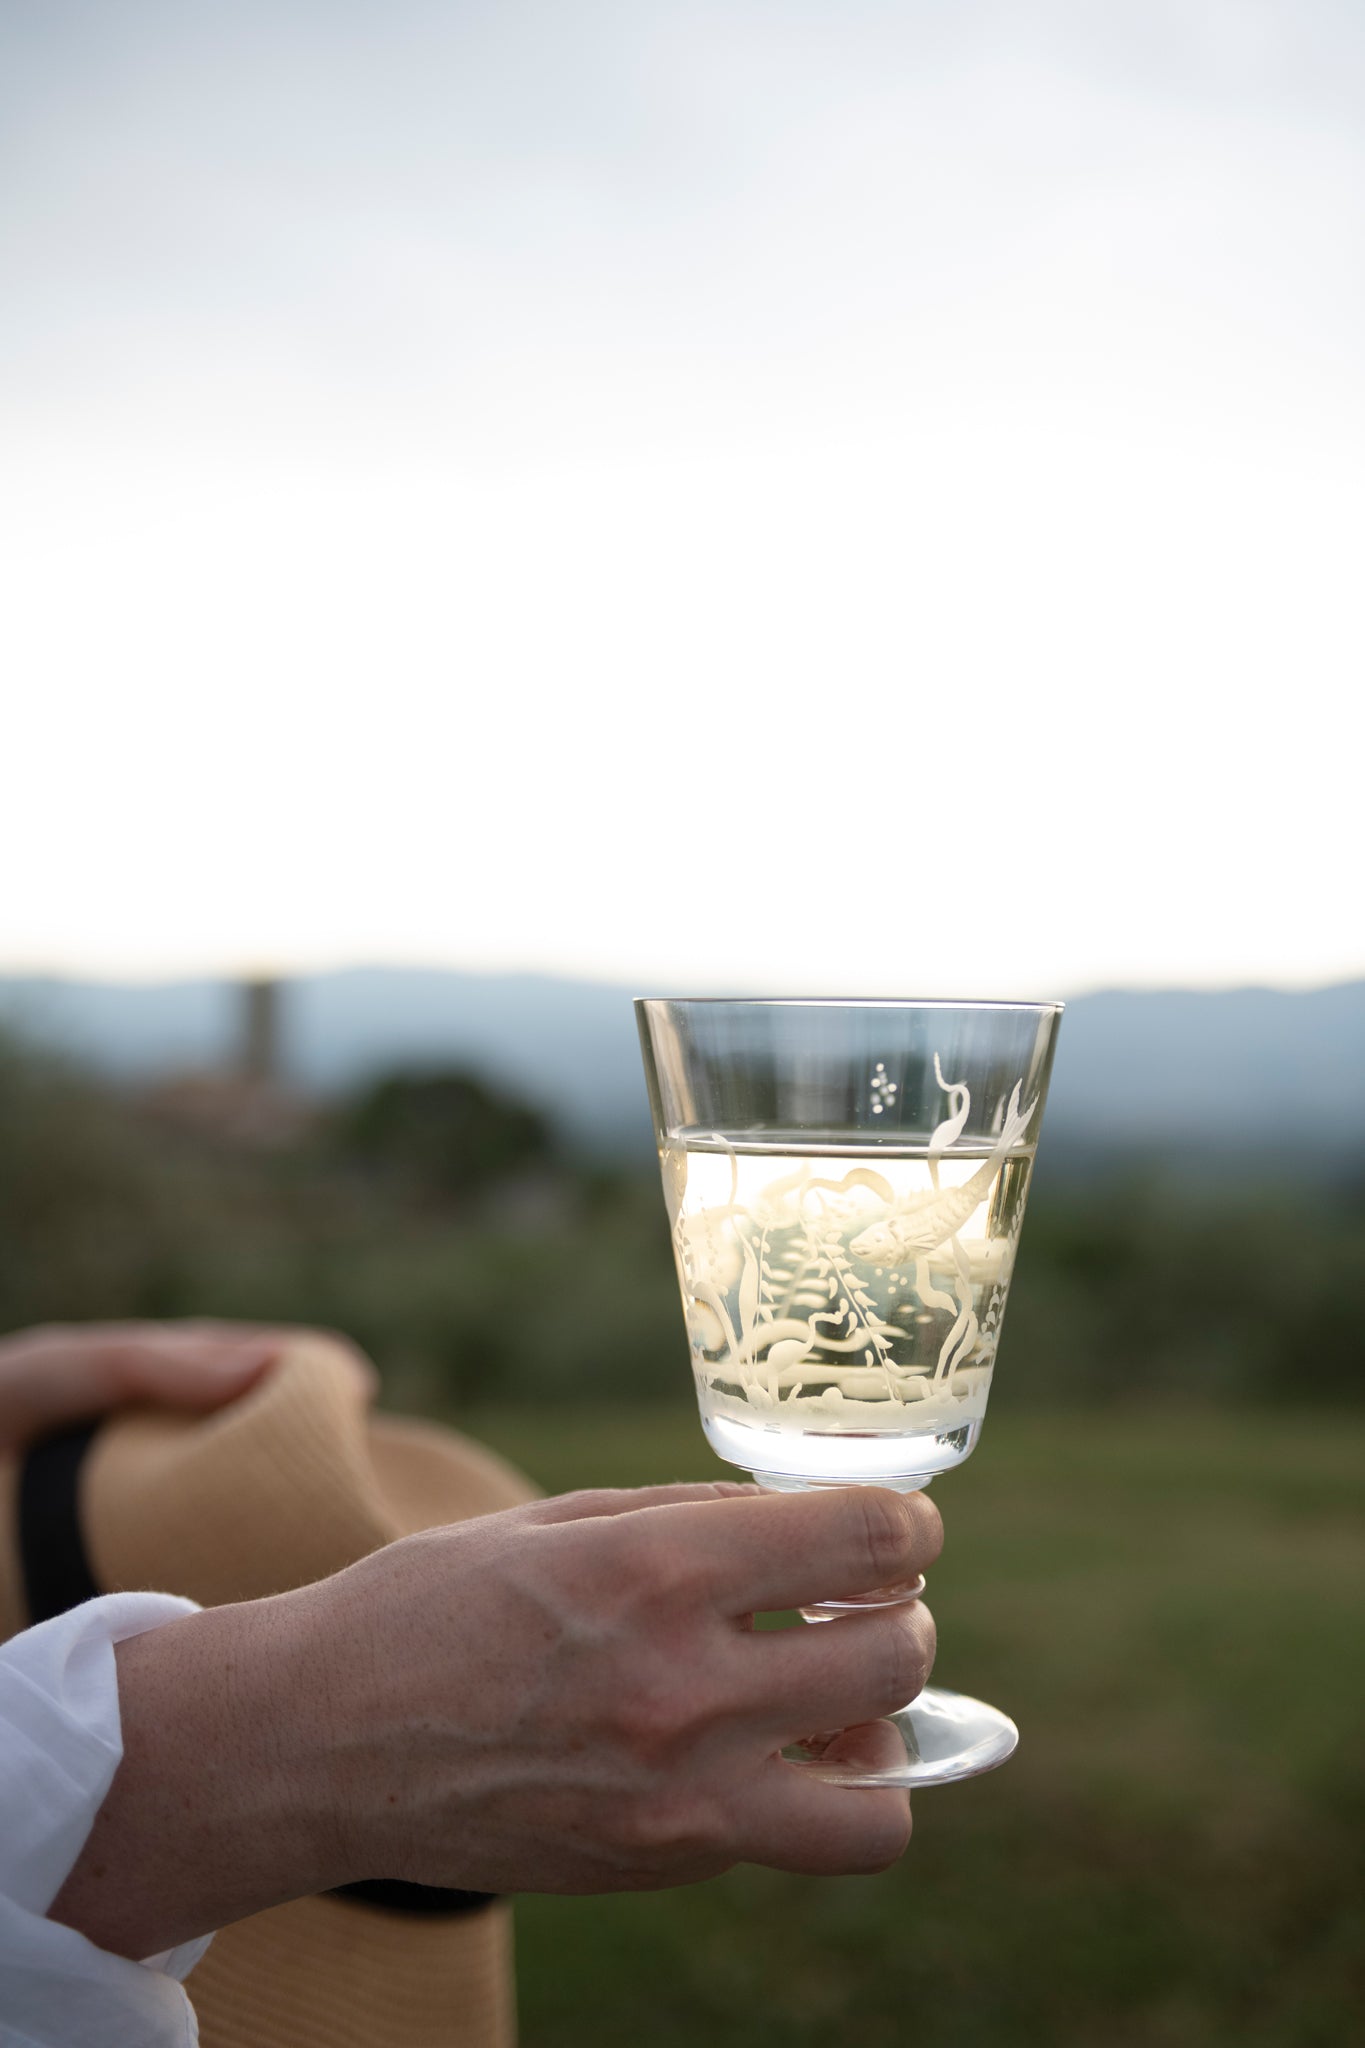 Tuscany-hand-glass-white-whine